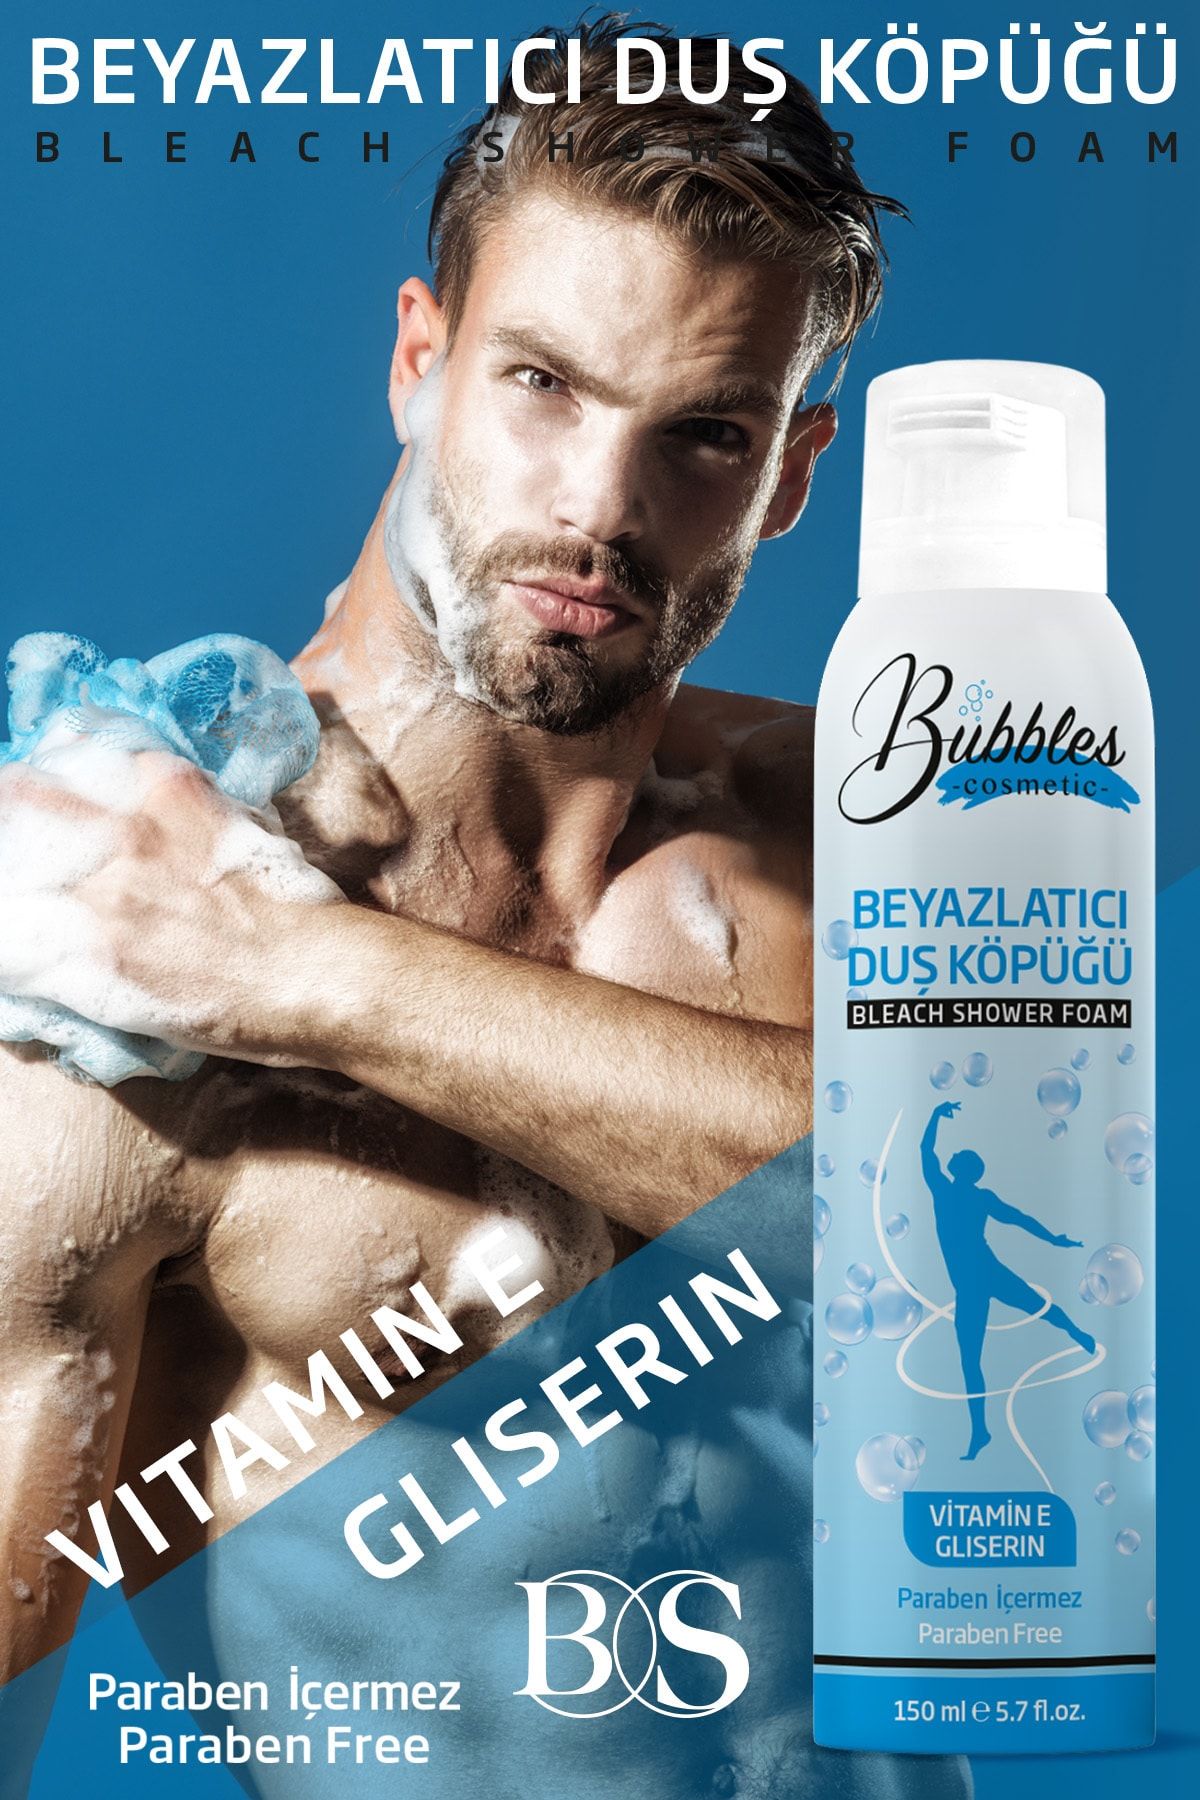 bs bubbles cosmetic Cilt Beyazlatıcı Duş Köpüğü Sprey 150ml –erkek Ekstra Nemlendirici Vücut Sivilcelerine Yoğun Etki